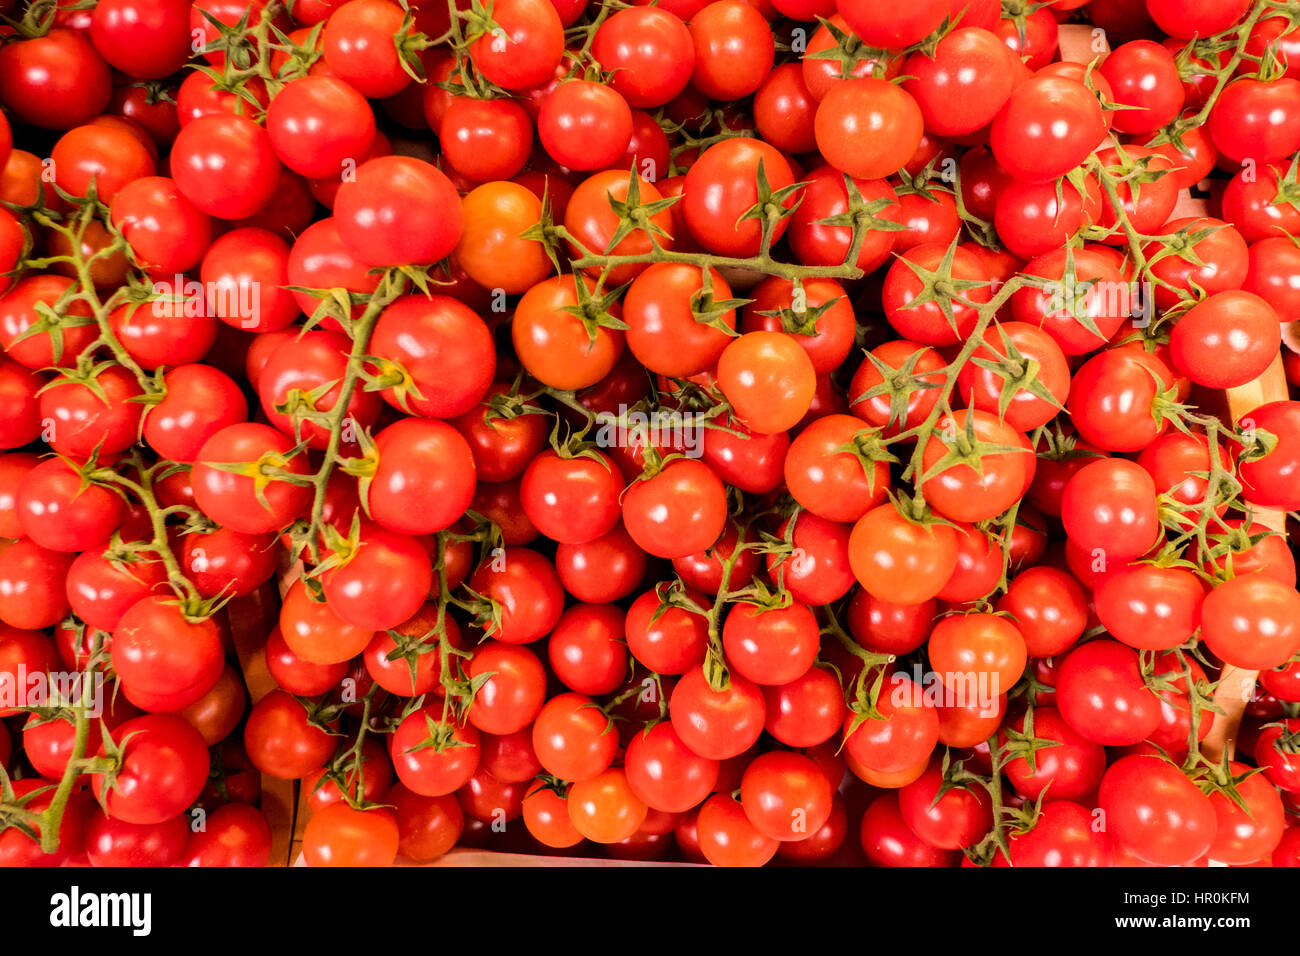 Tomato's on a market stall Stock Photo